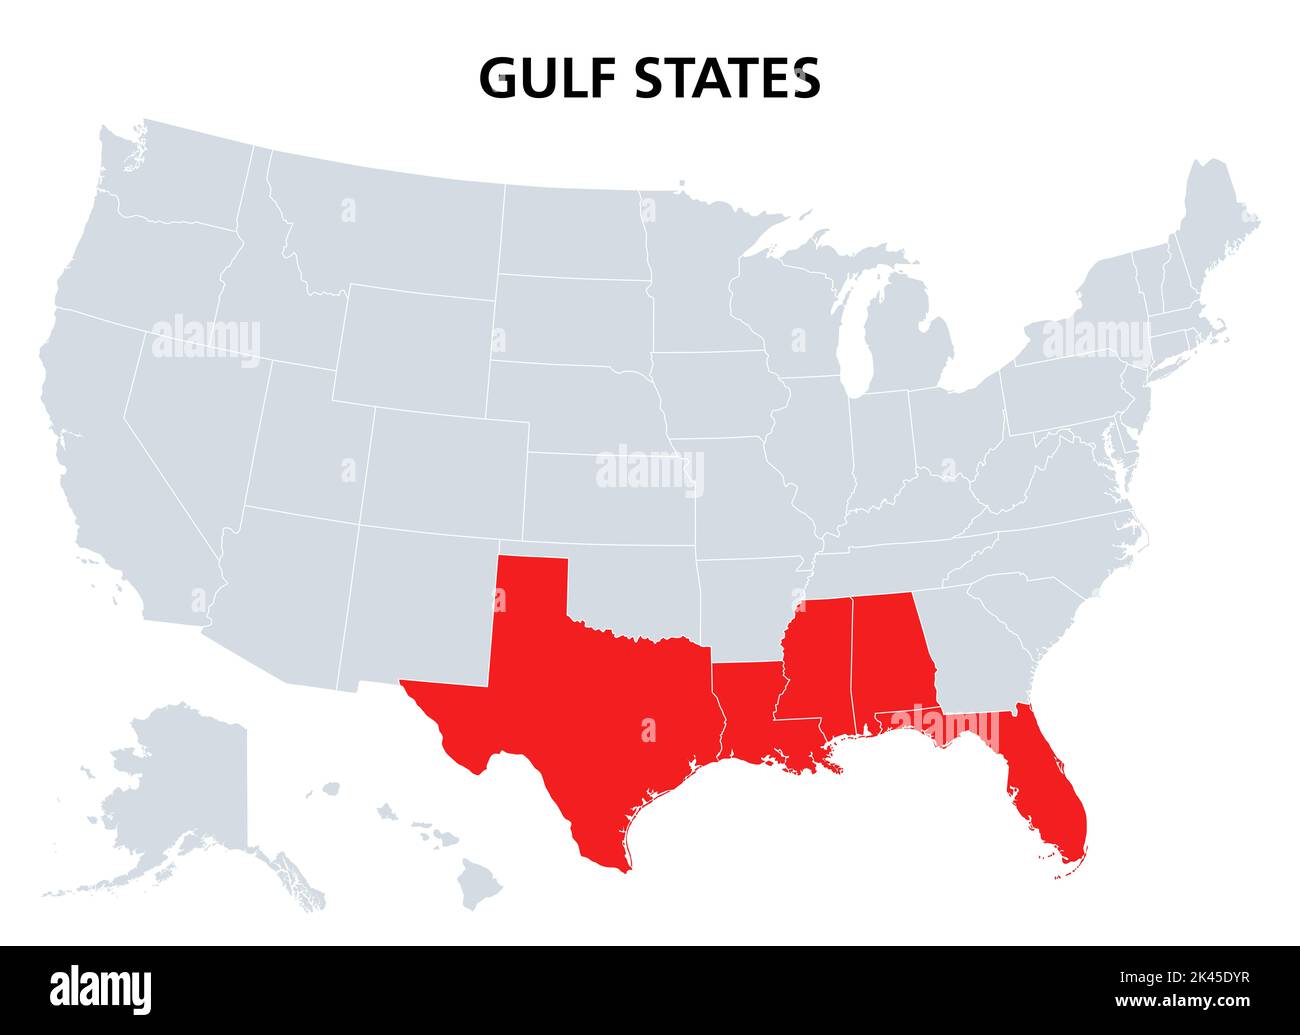 Etats du Golfe des Etats-Unis, carte politique. Gulf South, où le Texas, la Louisiane, le Mississippi, l'Alabama et la Floride rencontrent le golfe du Mexique. Banque D'Images